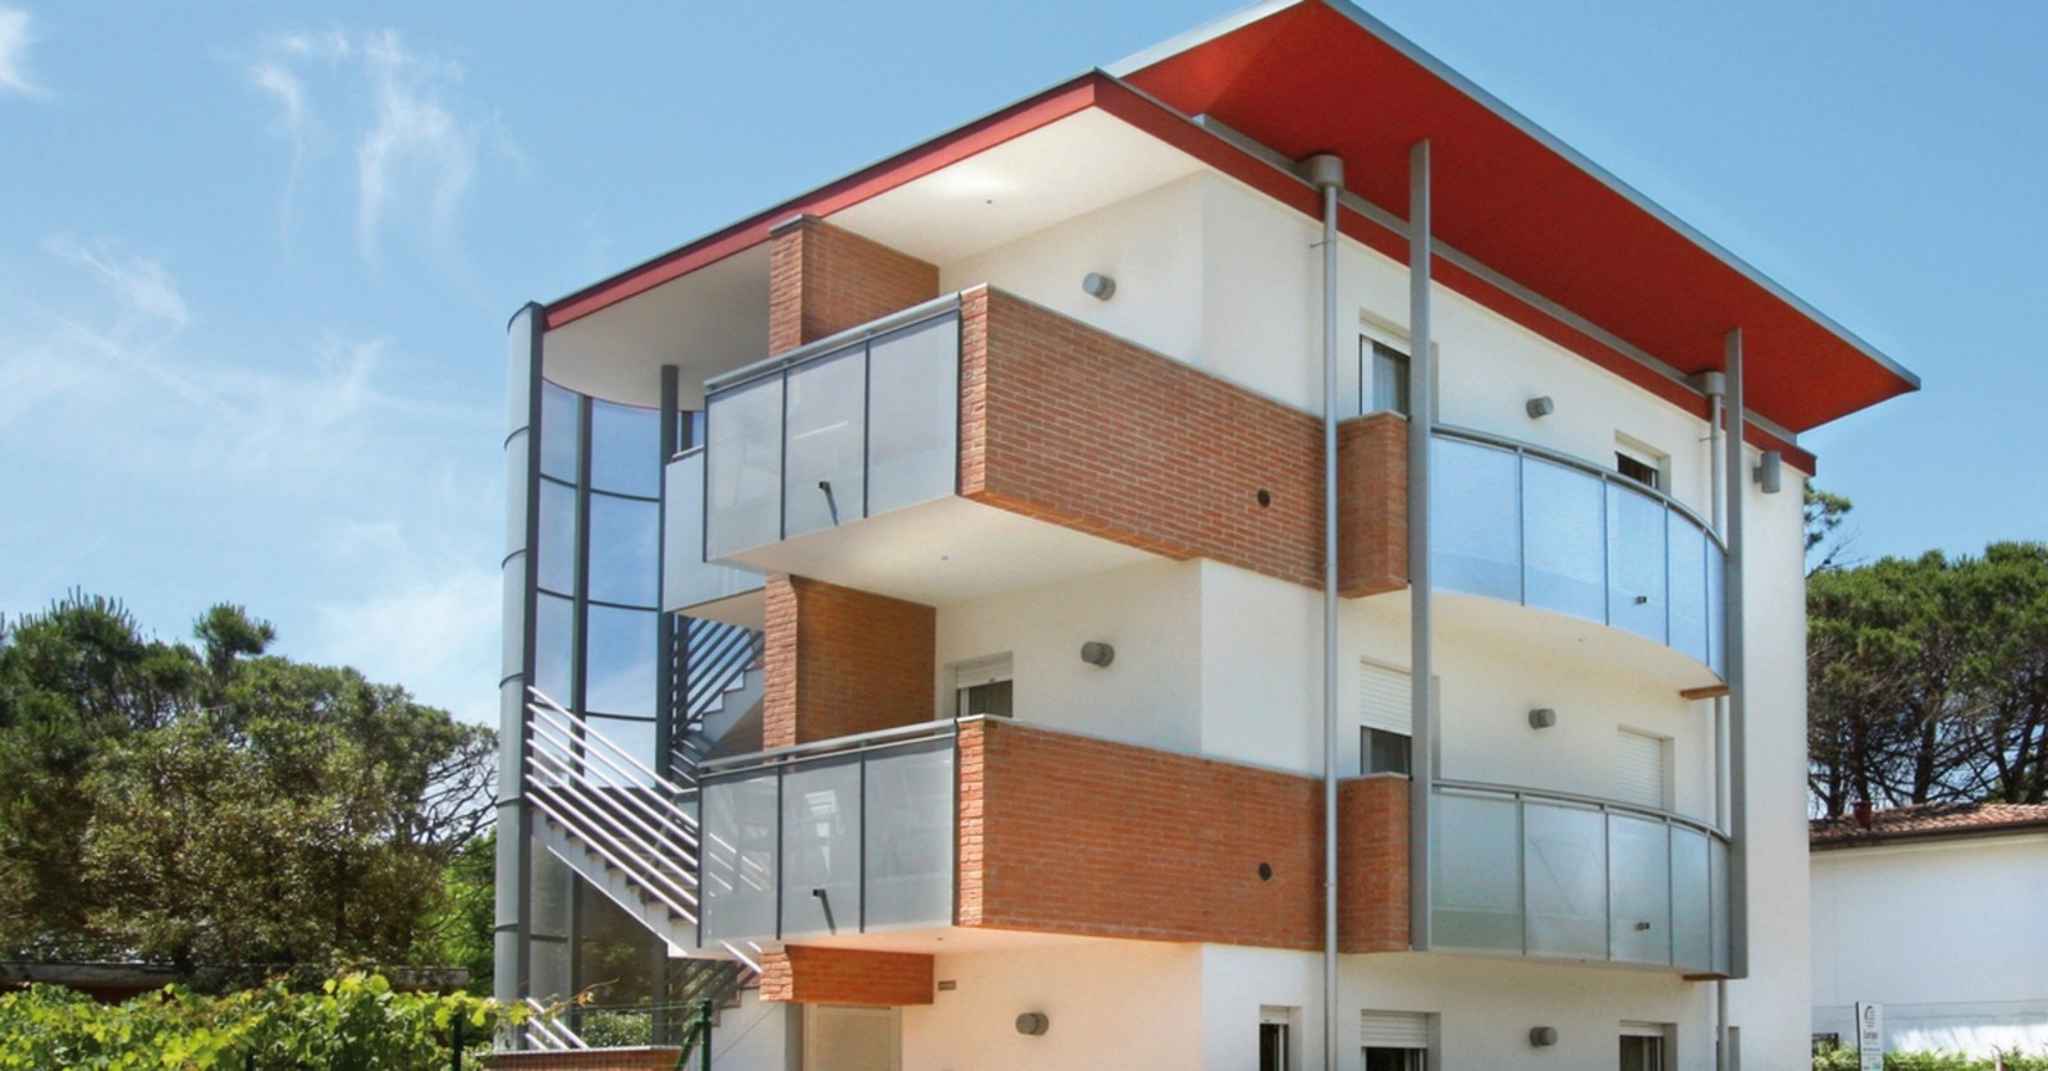 Ferienwohnung in anspruchsvoller Residenz mit 2 Balkonen